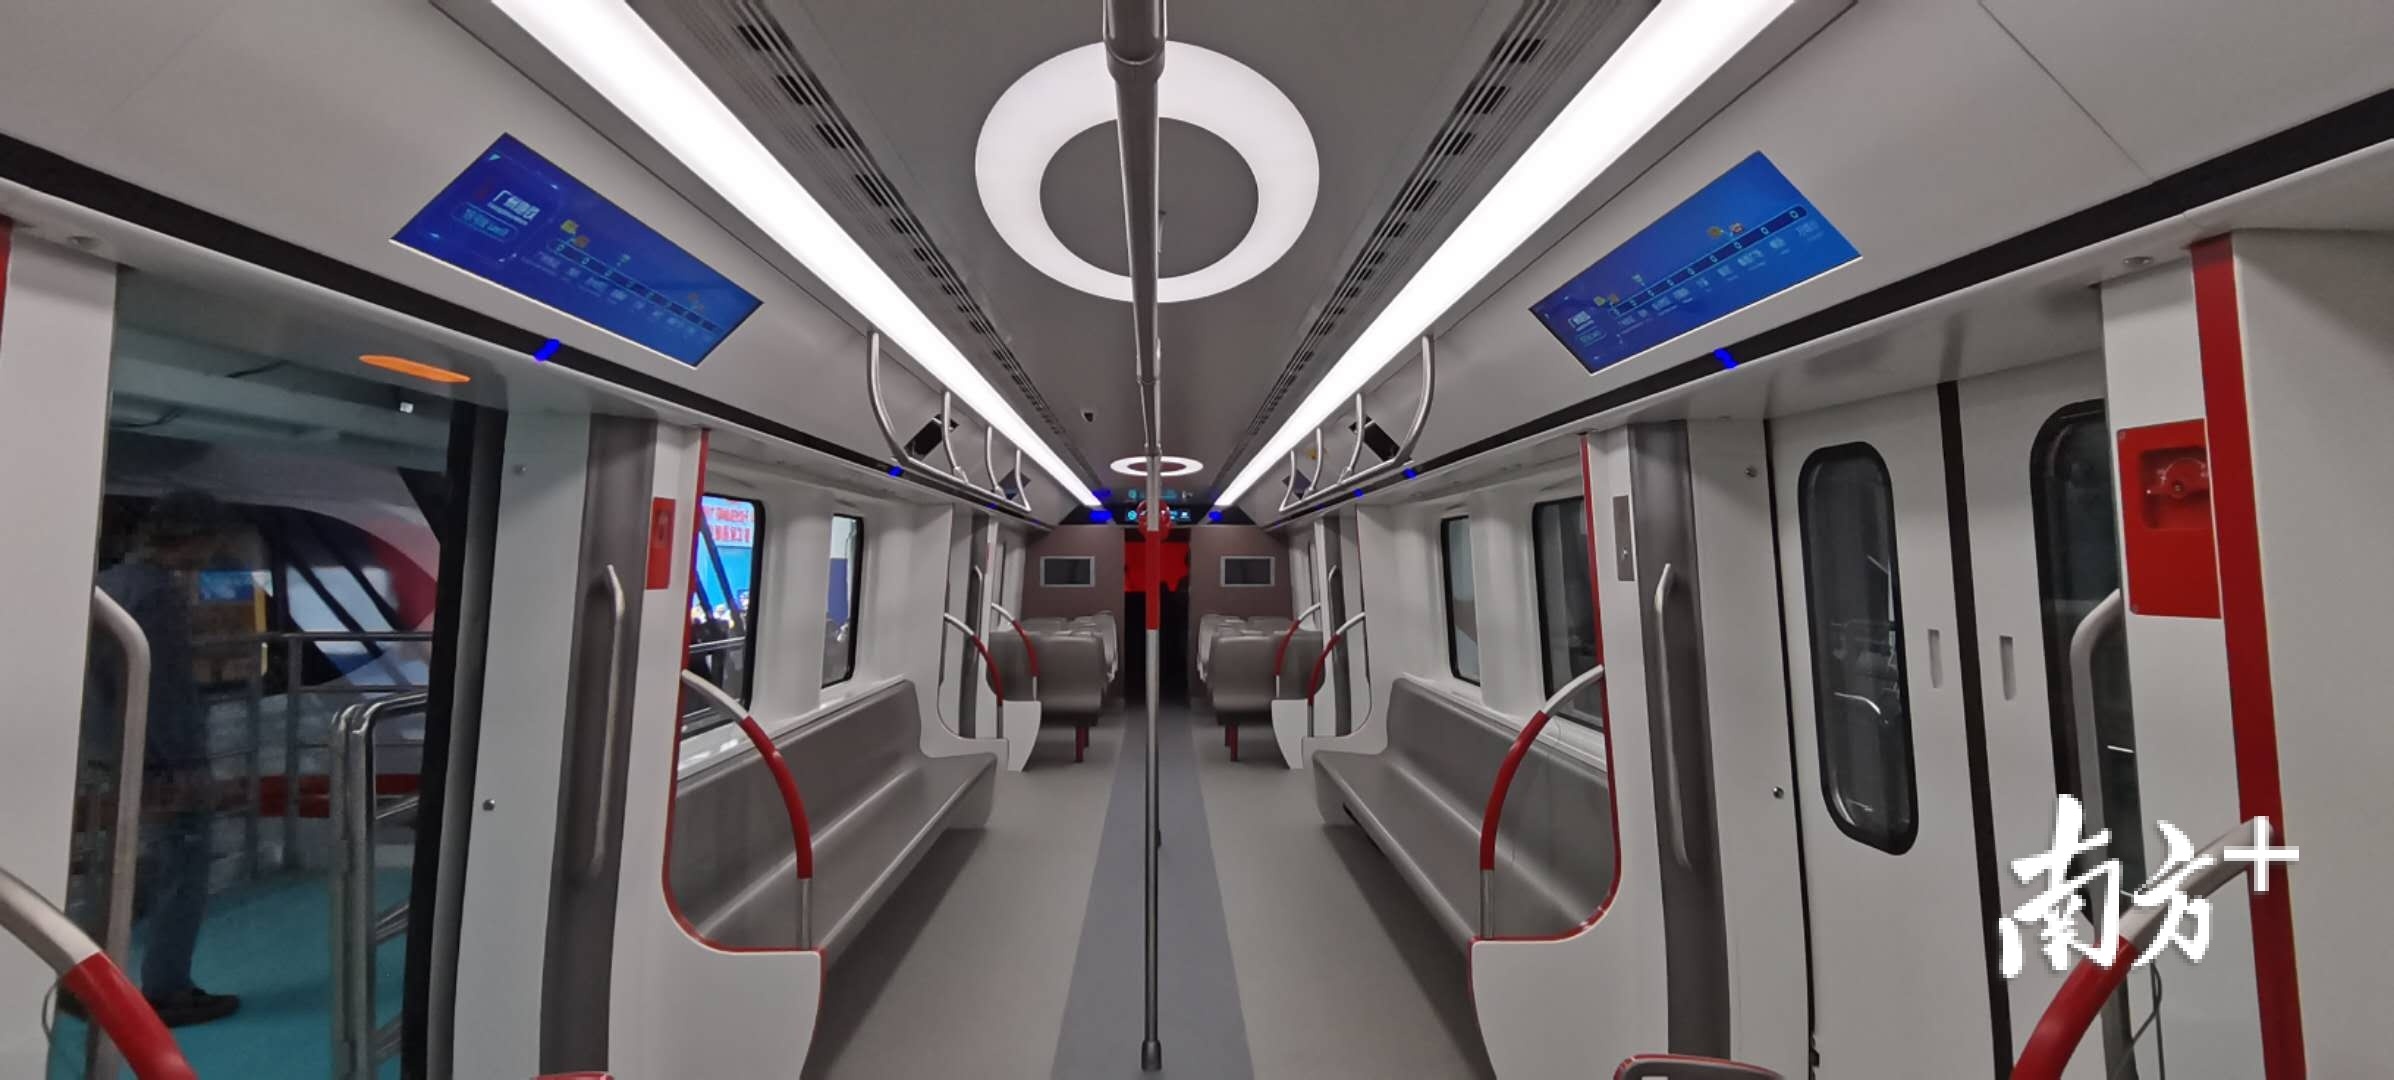 中国建世界最深高铁站：距离地面120米-中国,世界,老外,高铁,最深 ——快科技(驱动之家旗下媒体)--科技改变未来